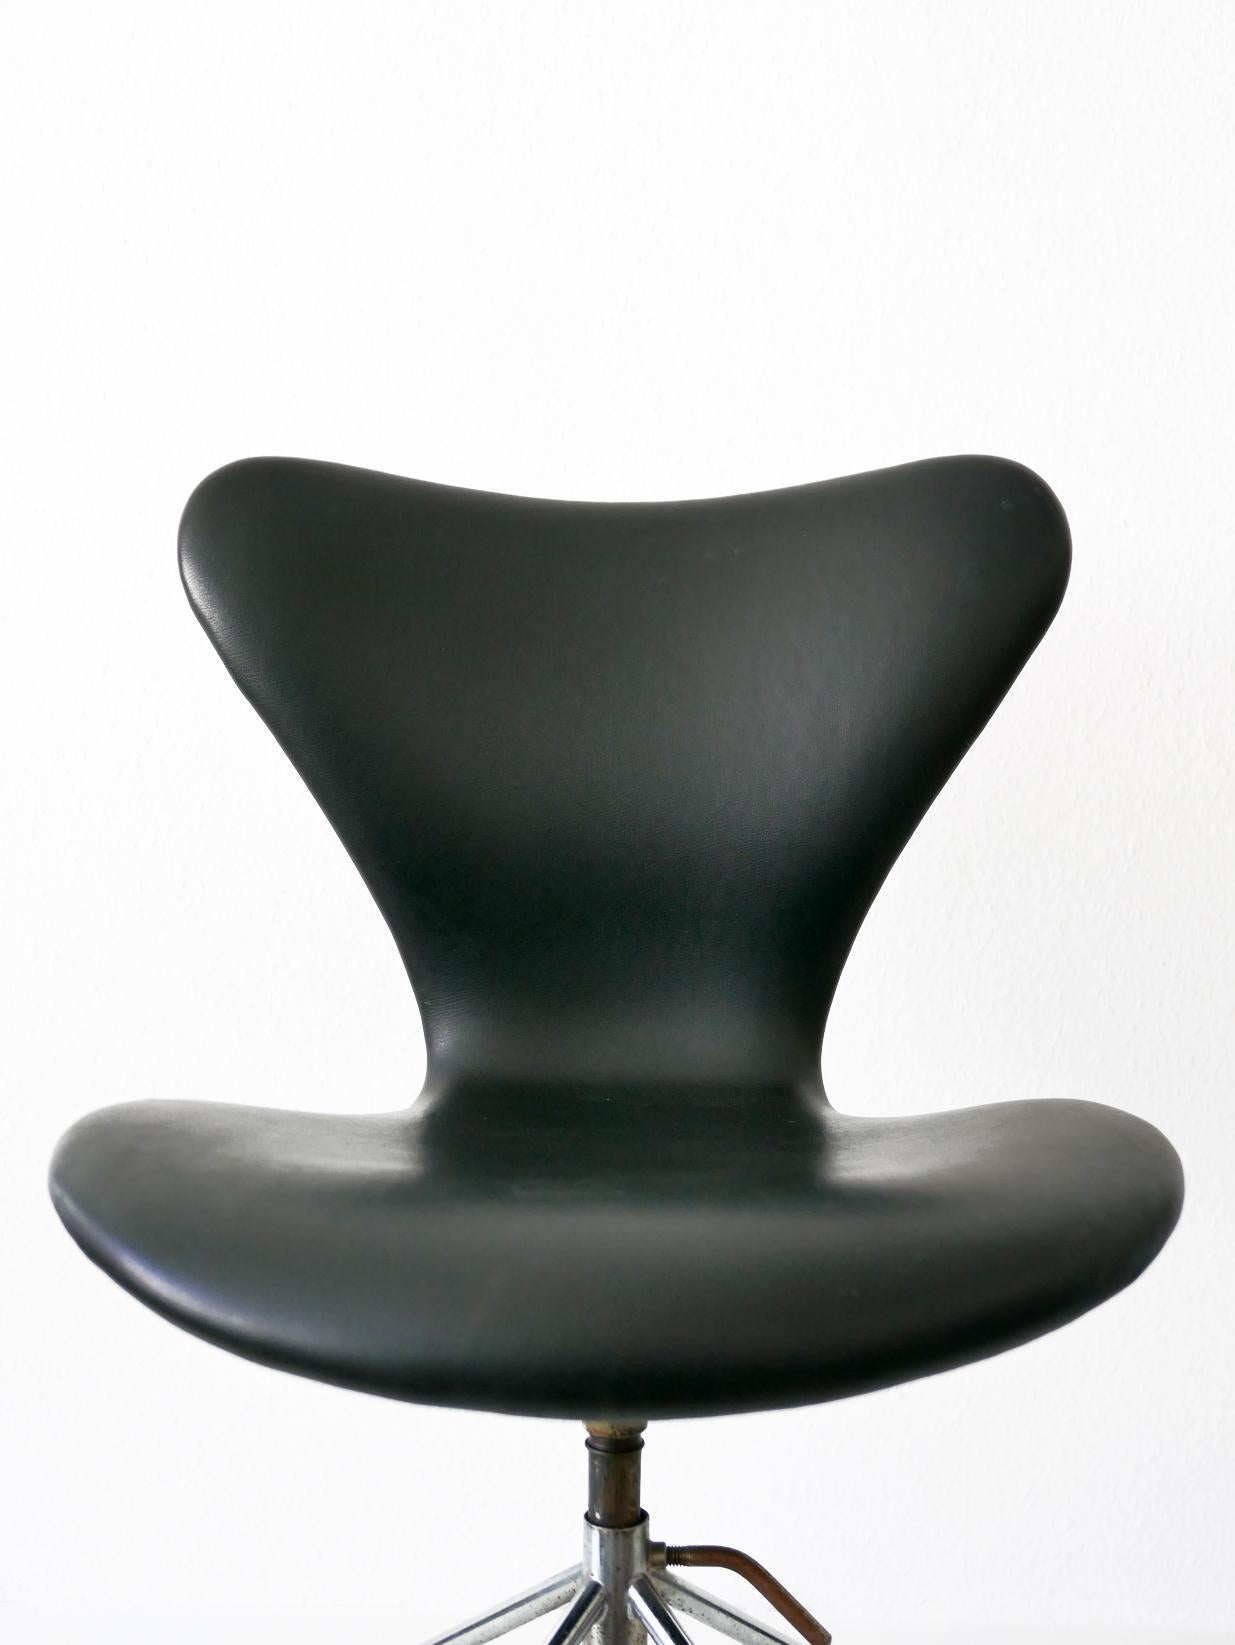 Danish Mid-Century Modern Office Chair 3117 by Arne Jacobsen for Fritz Hansen, 1960s For Sale